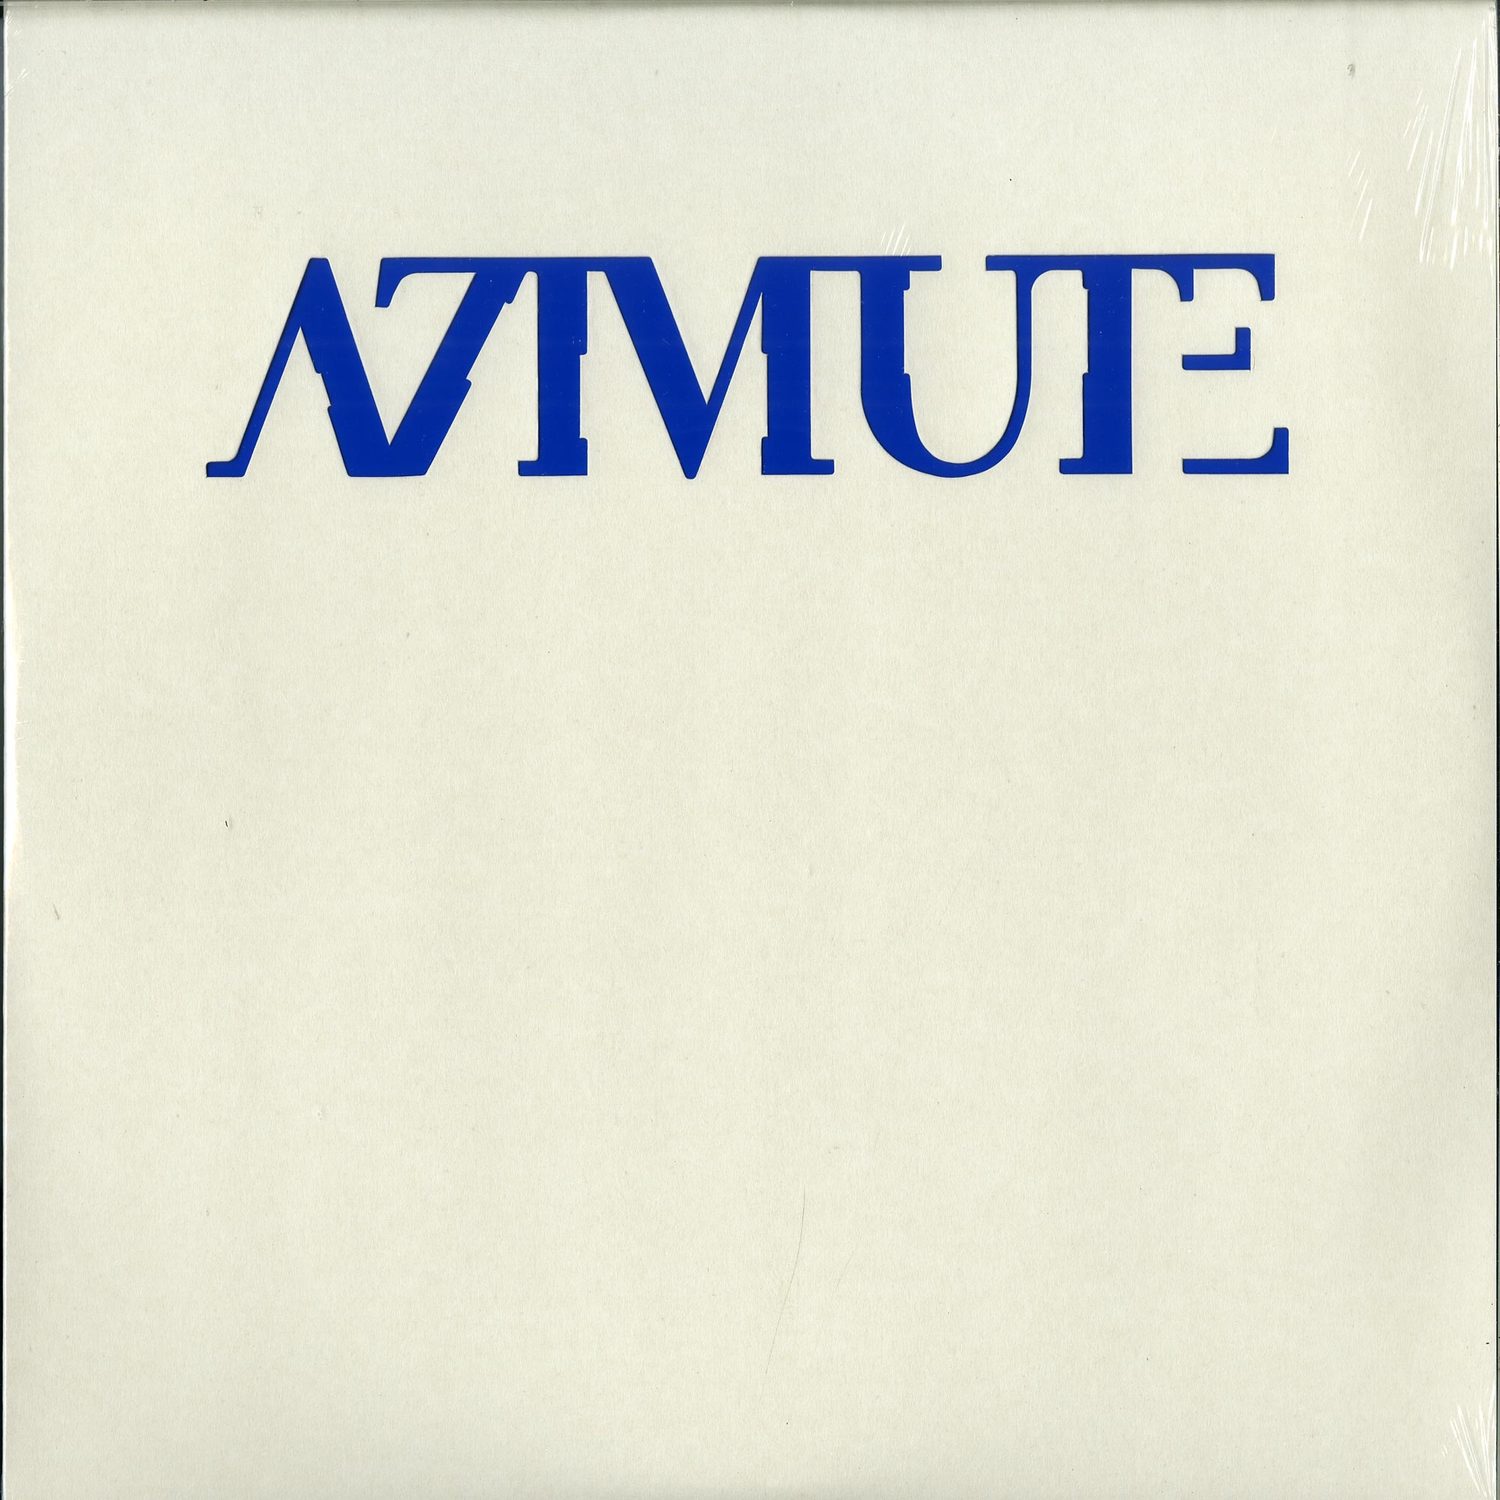 Azimute - AZIMUTE BLUE 